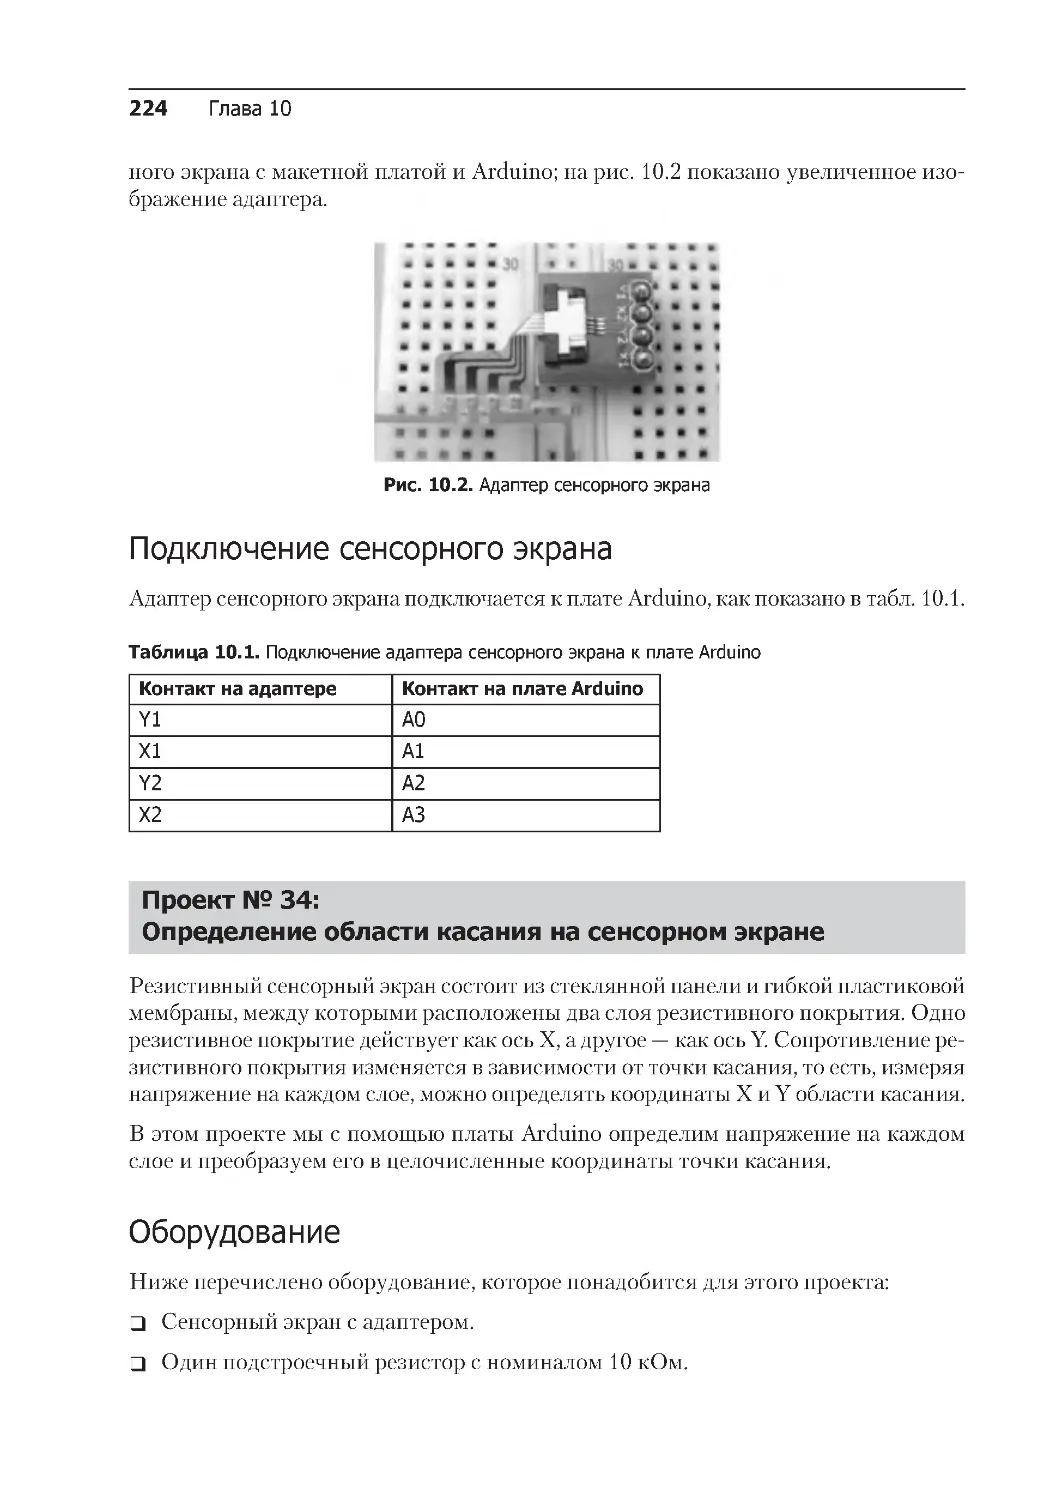 ﻿Проект № 34: 
Определение области касания на сенсорном экран